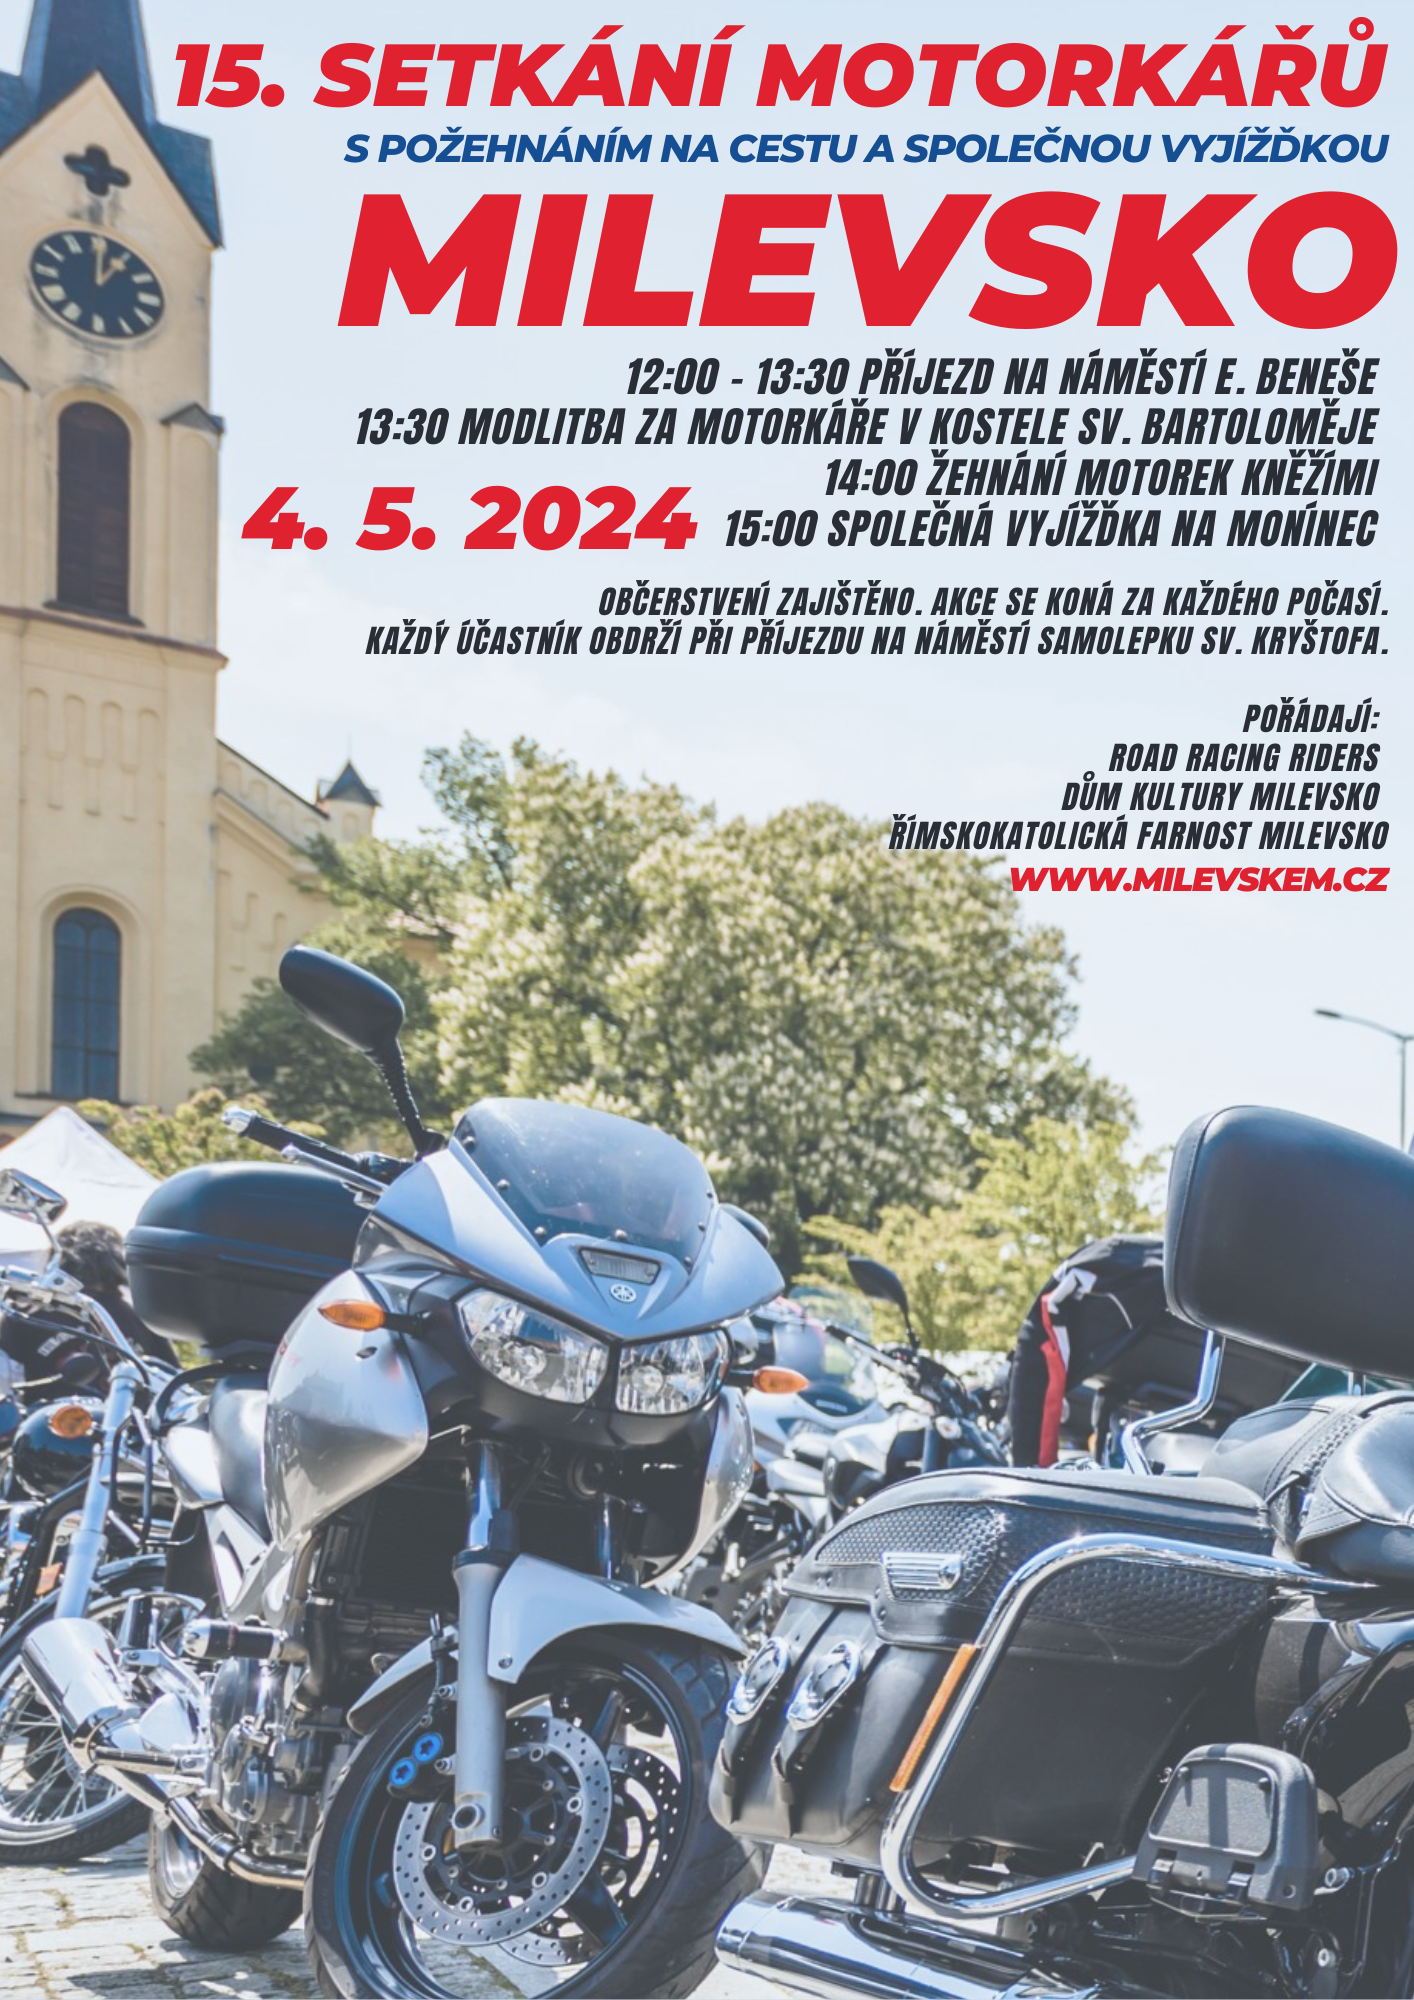 Plakát Setkání motorkářů s požehnáním a společnou vyjížďkou